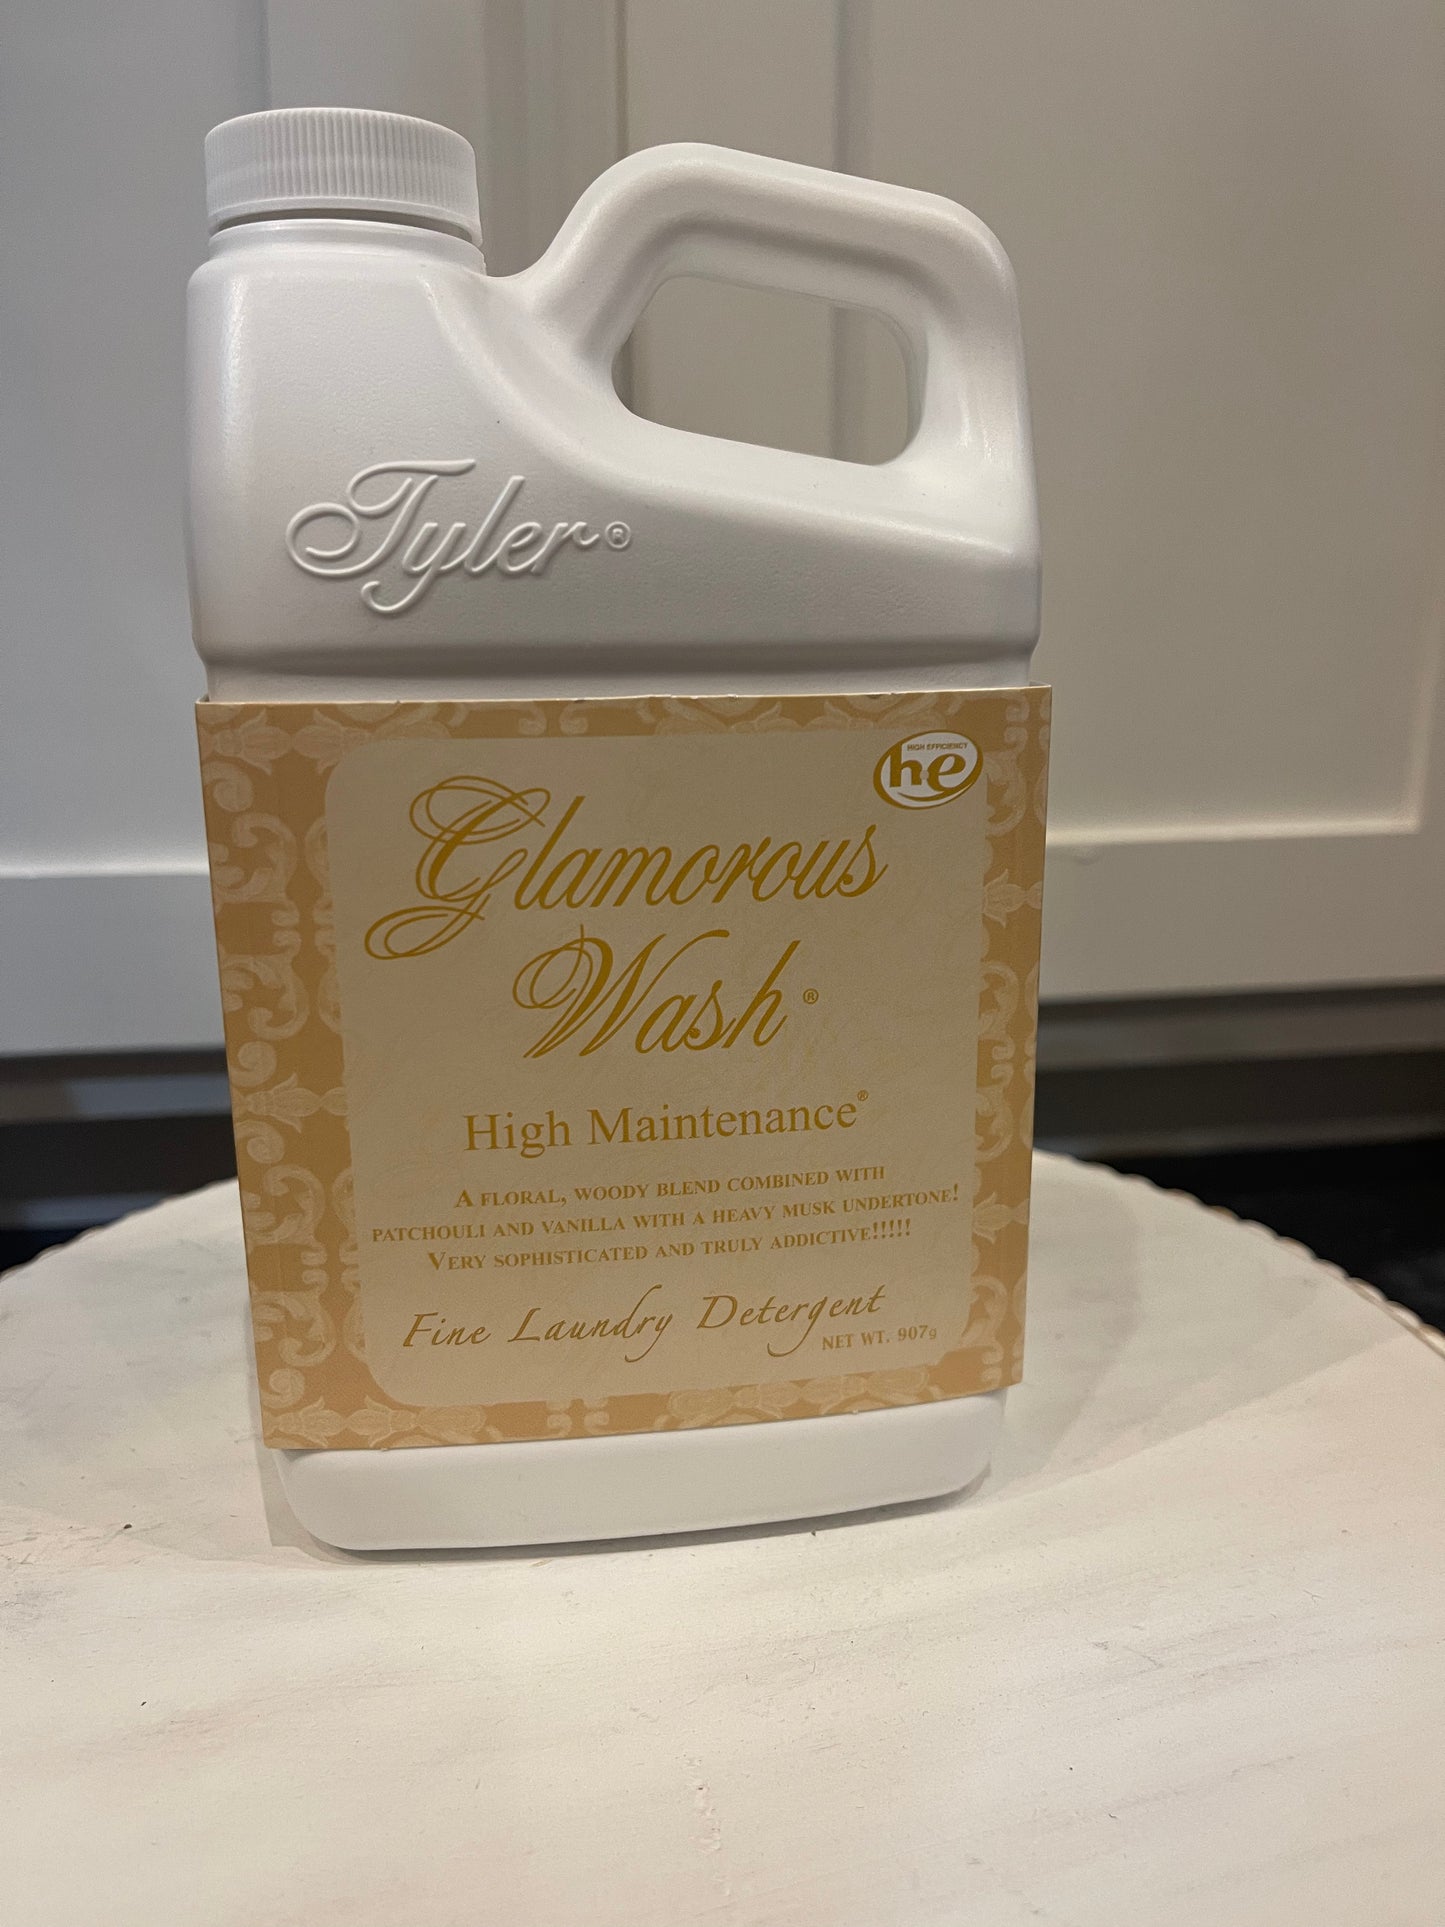 "High Maintenance" Tyler Candle Company Glamorous Wash.